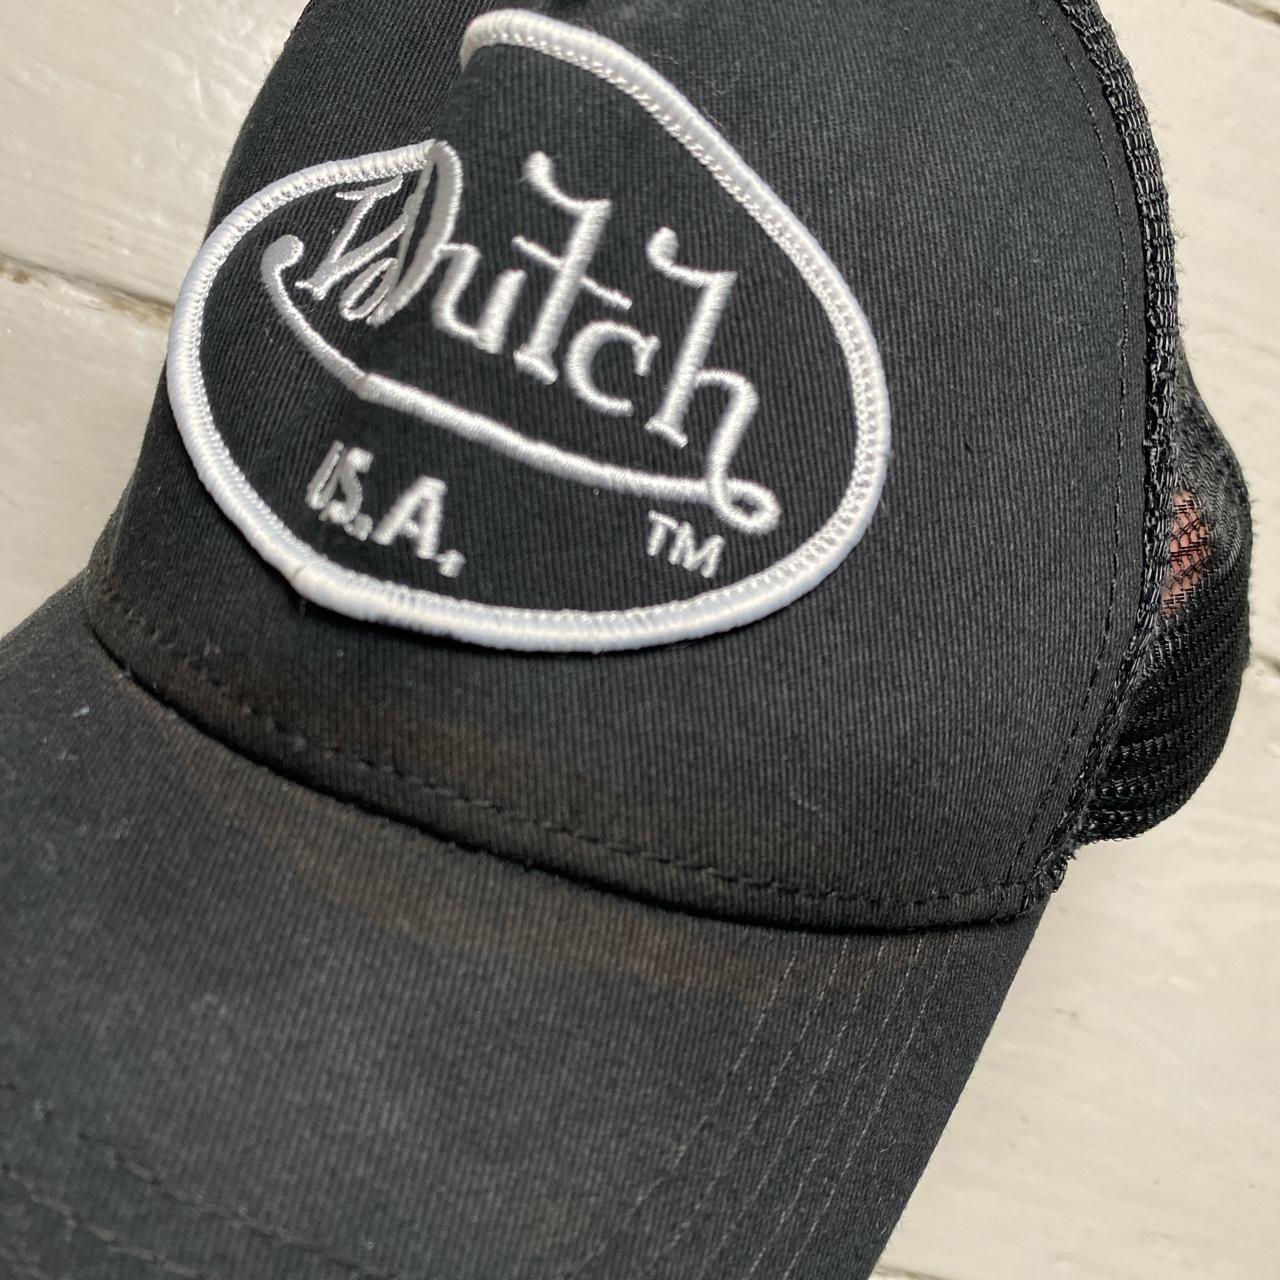 Von Dutch Black and White Cap